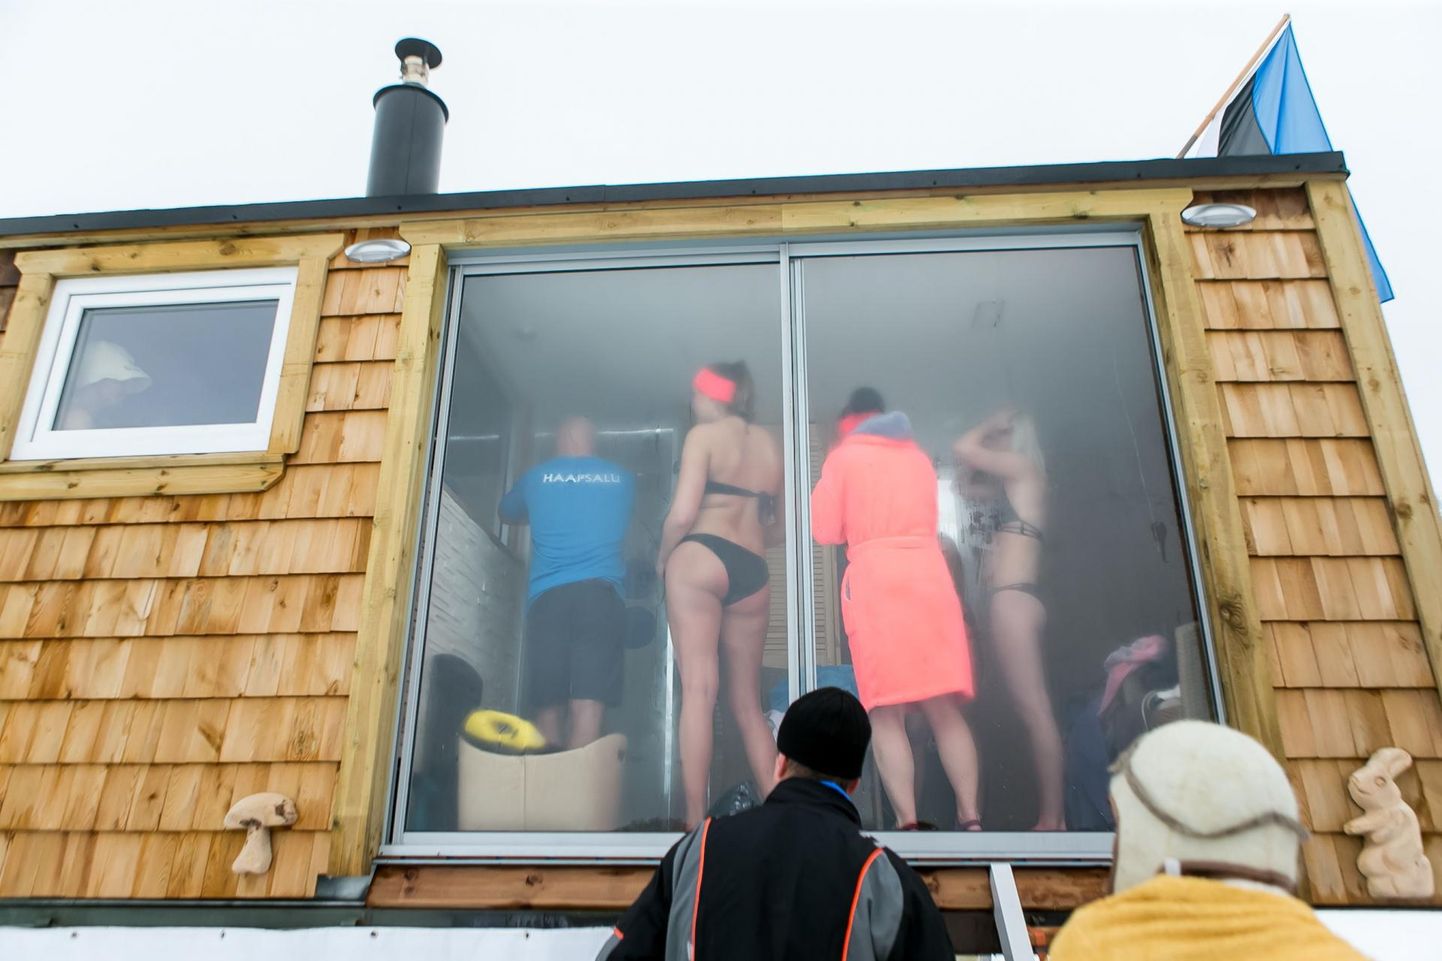 Rakvere saunafestival tahab seni Eesti suurimale saunapeole ehk talvisele Otepää saunamaratonile saunatajate arvuga kõvasti ära teha.